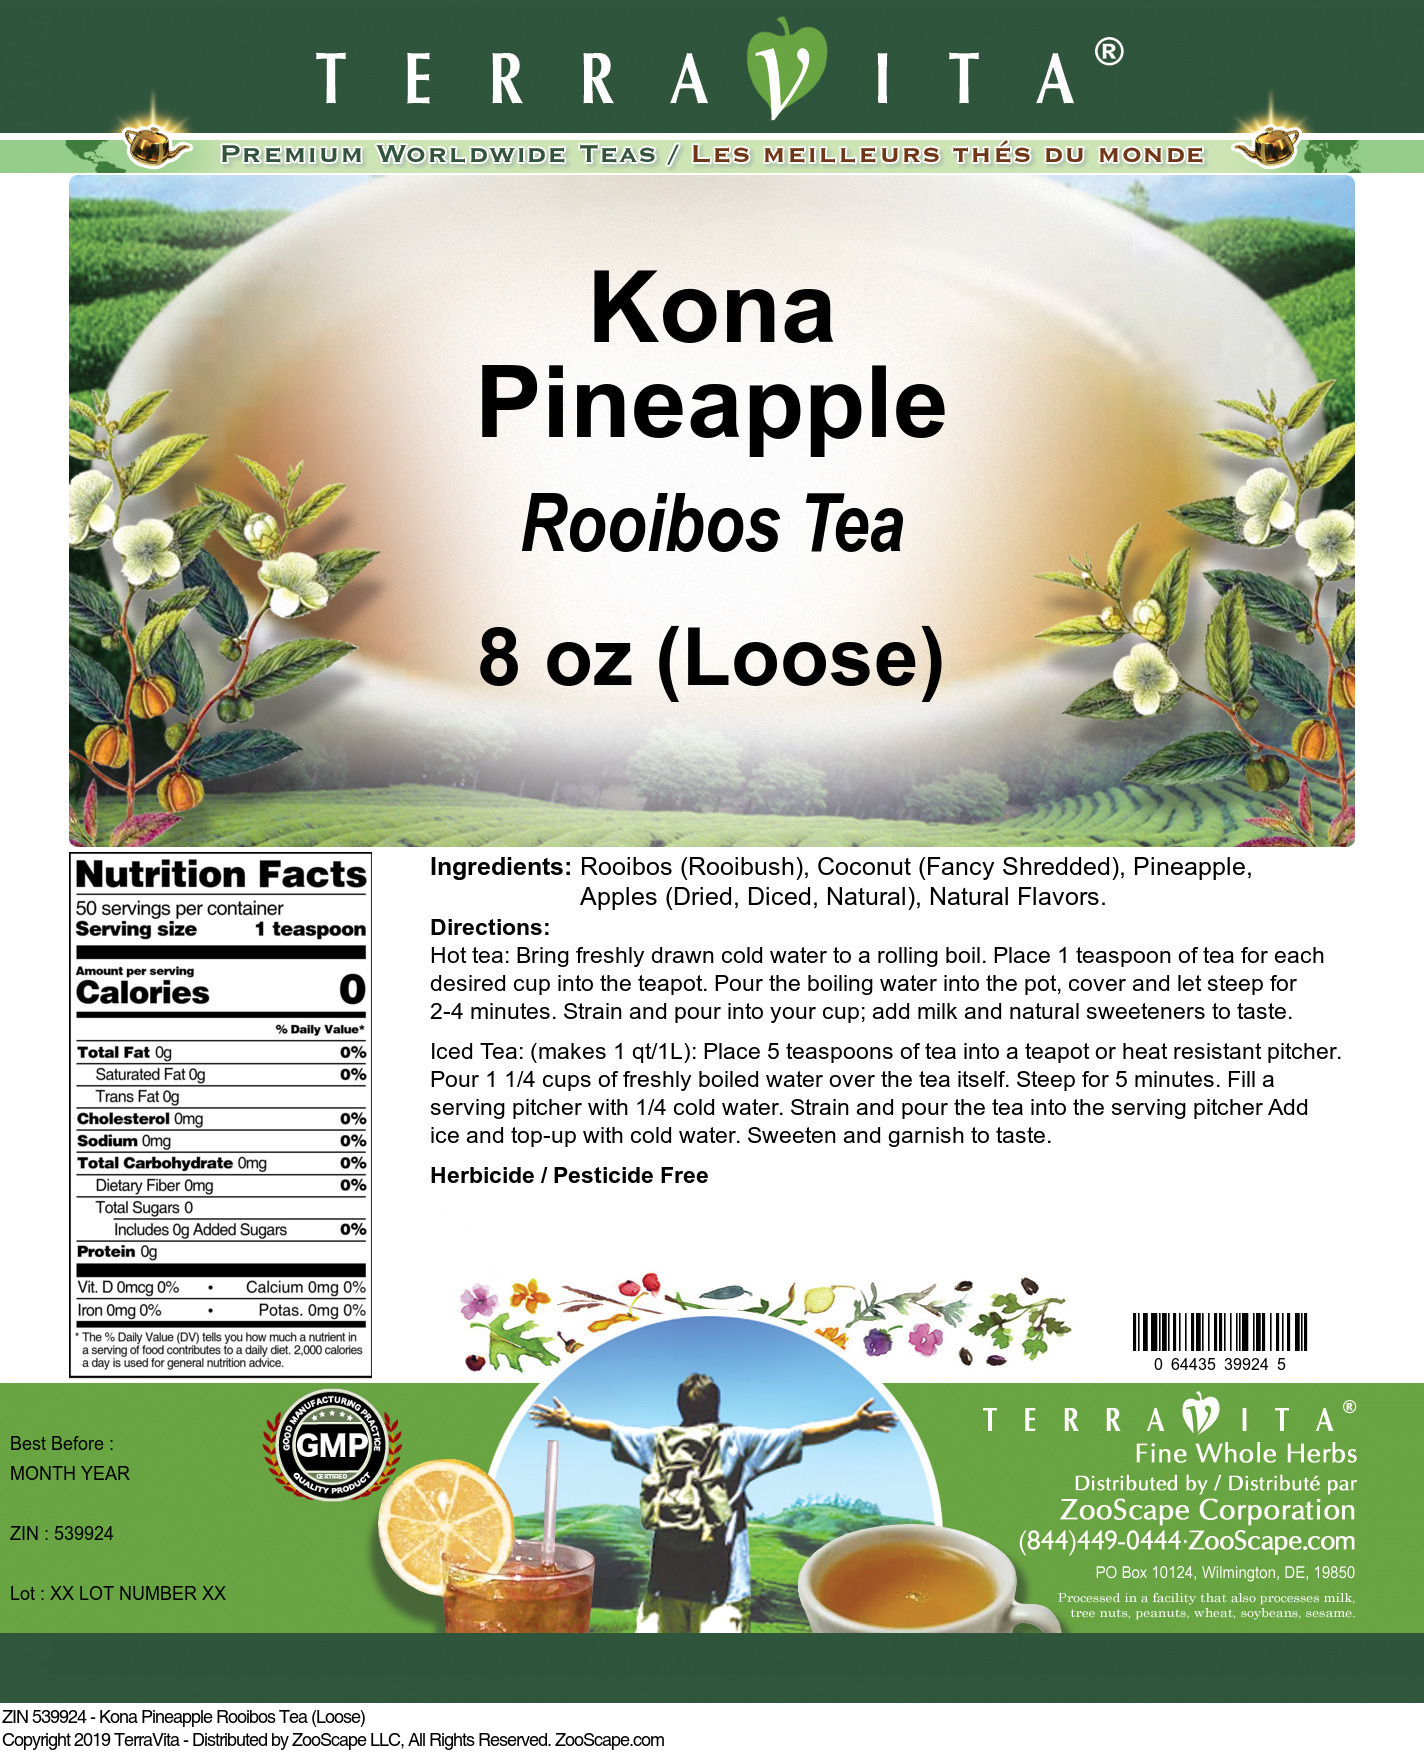 Kona Pineapple Rooibos Tea (Loose) - Label